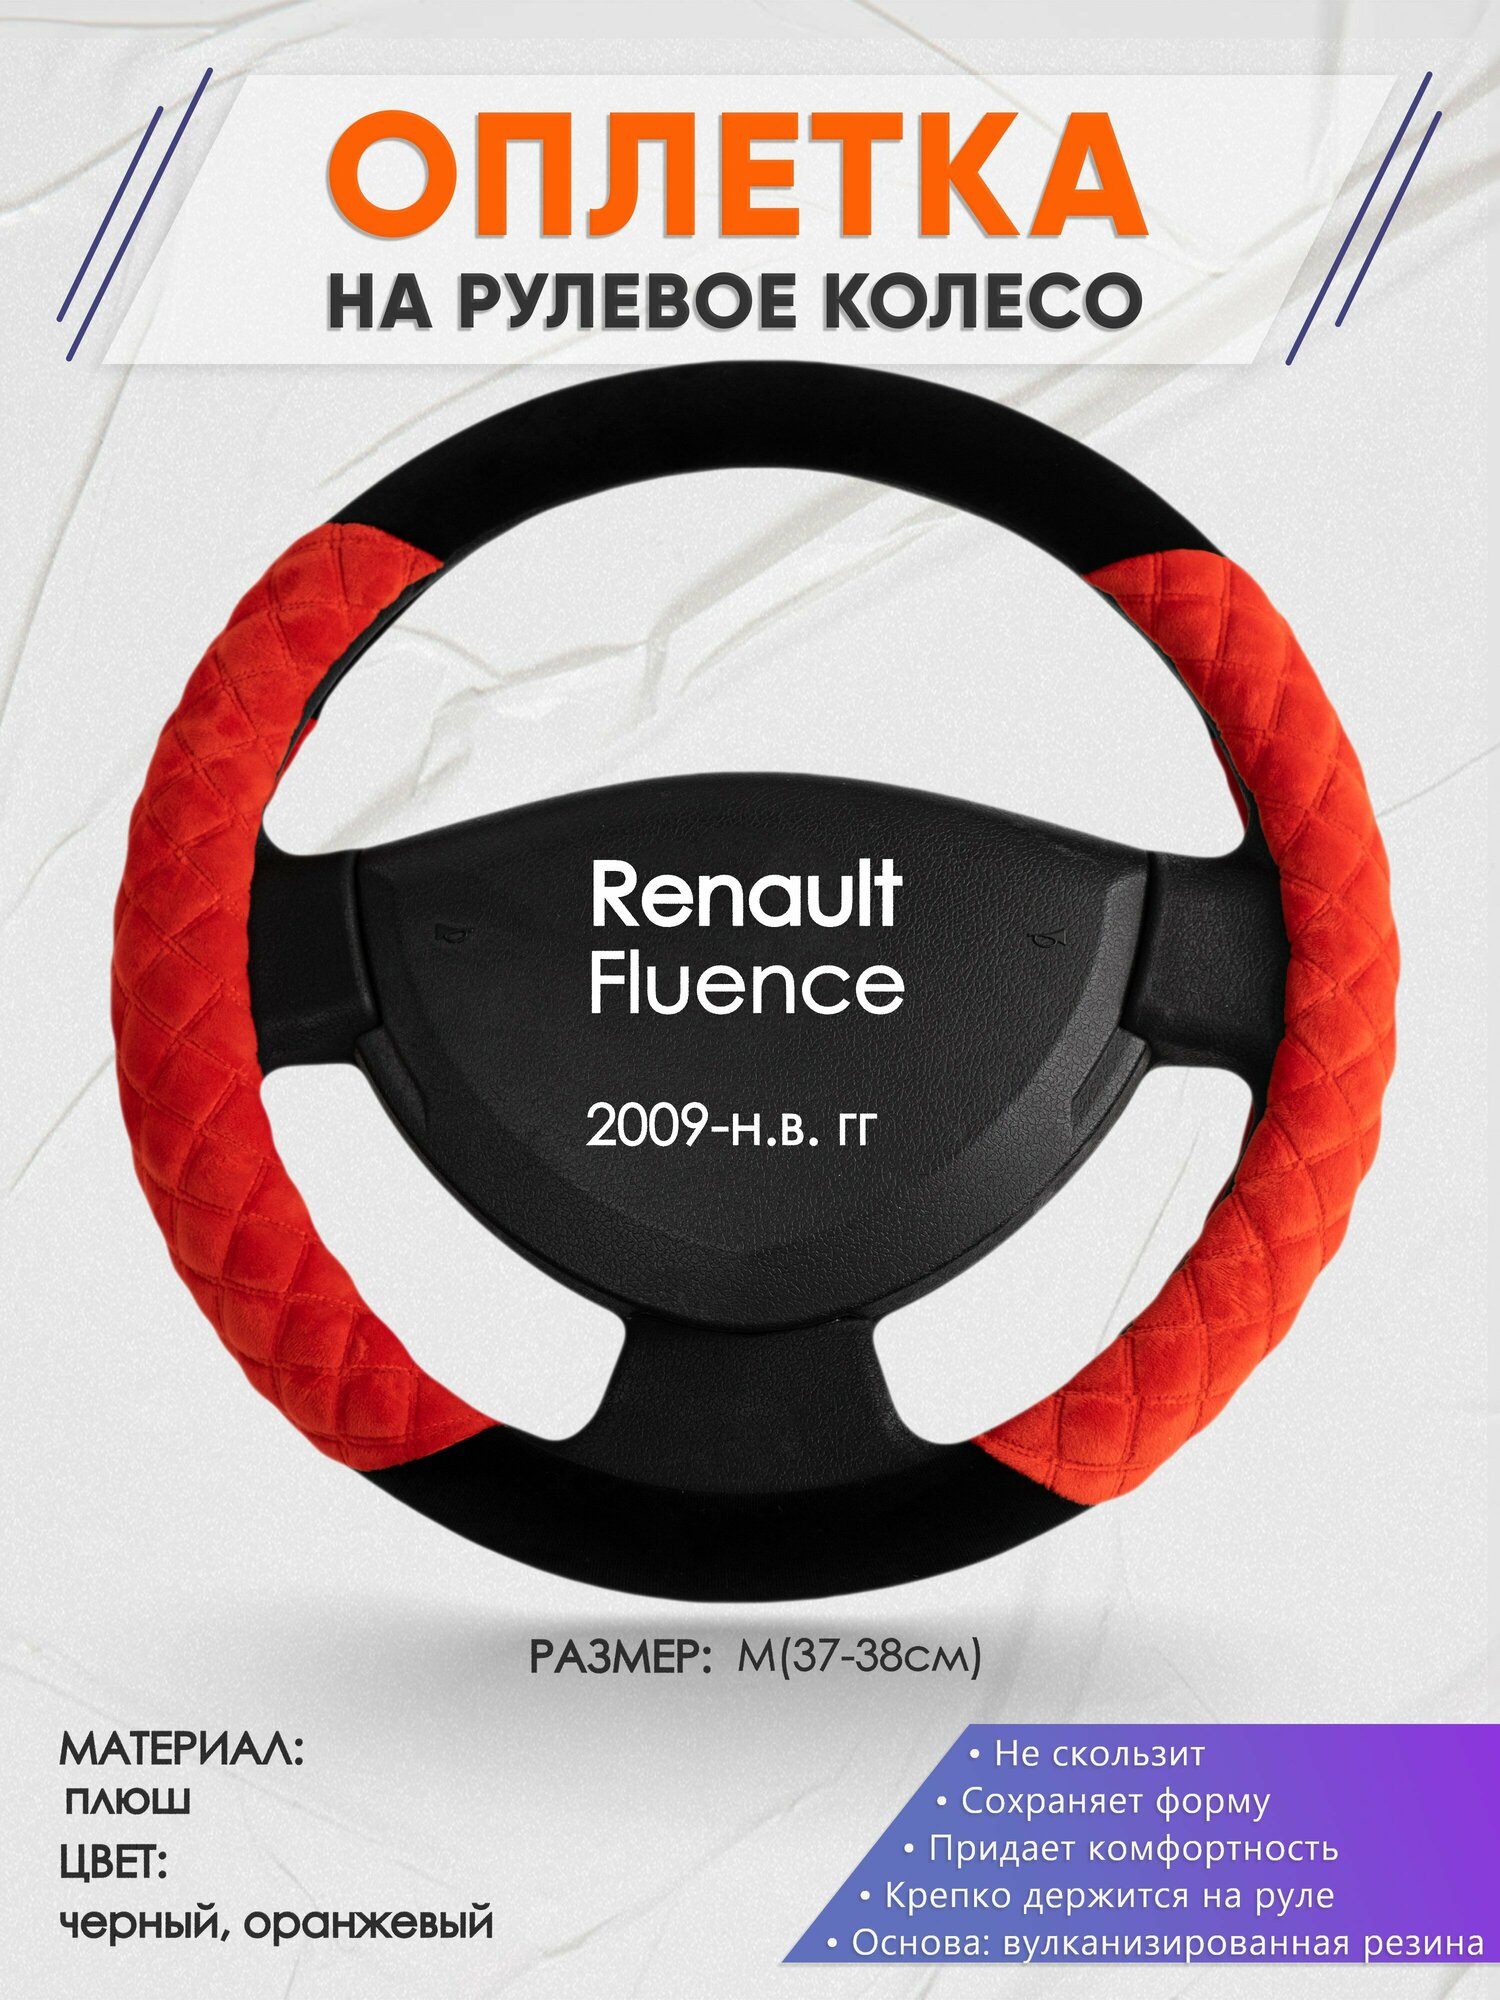 Оплетка на руль для Renault Fluence (Рено Флюенс) 2009-н. в, M(37-38см), Замша 37